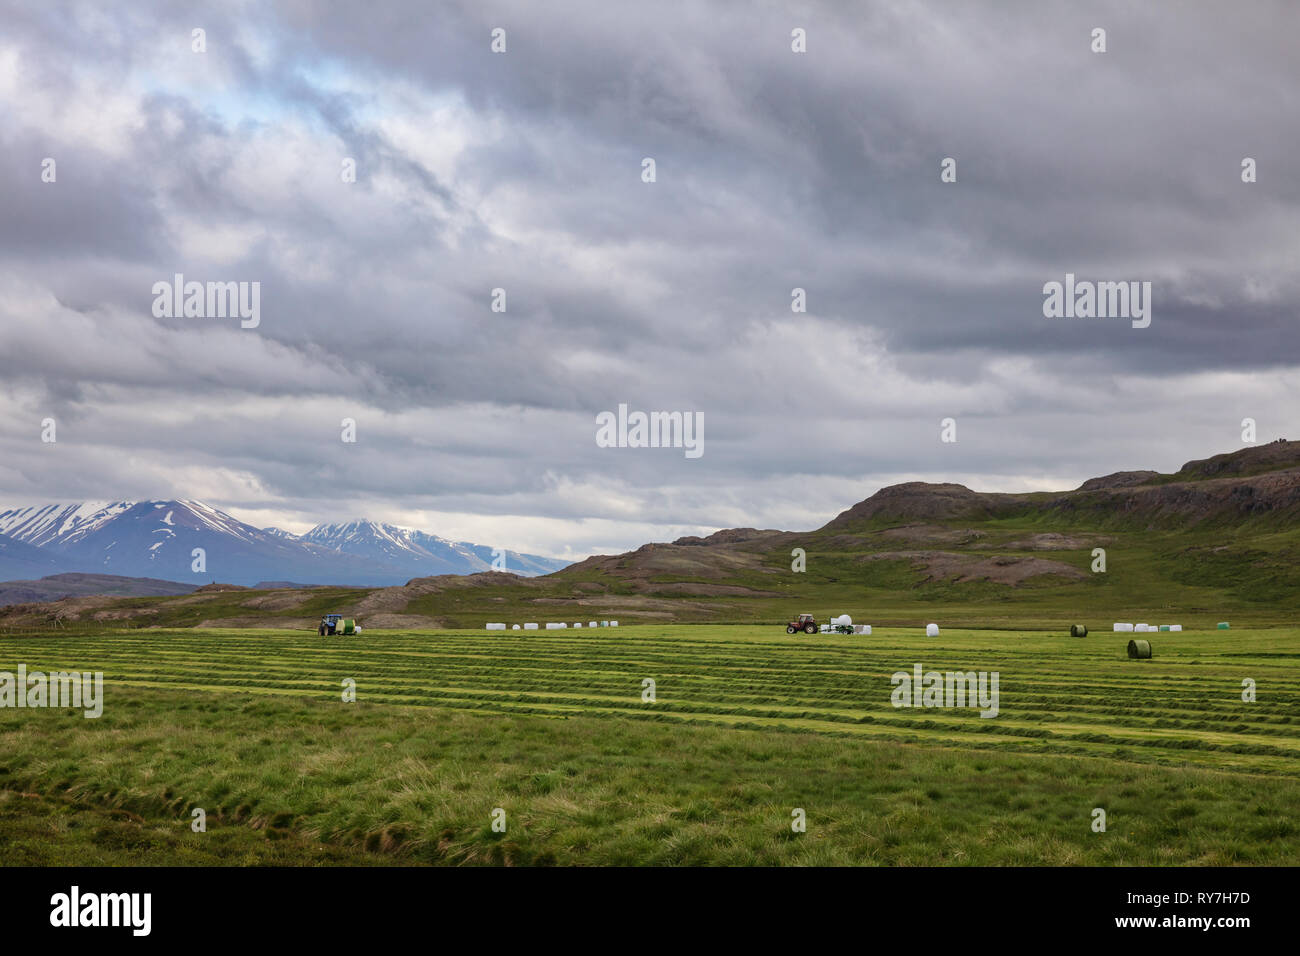 Isländische Landschaft mit Traktor sammeln und wickeln Heu unter düsteren Himmel - harten landwirtschaftlichen conitions Konzept, Island, Skandinavien Stockfoto